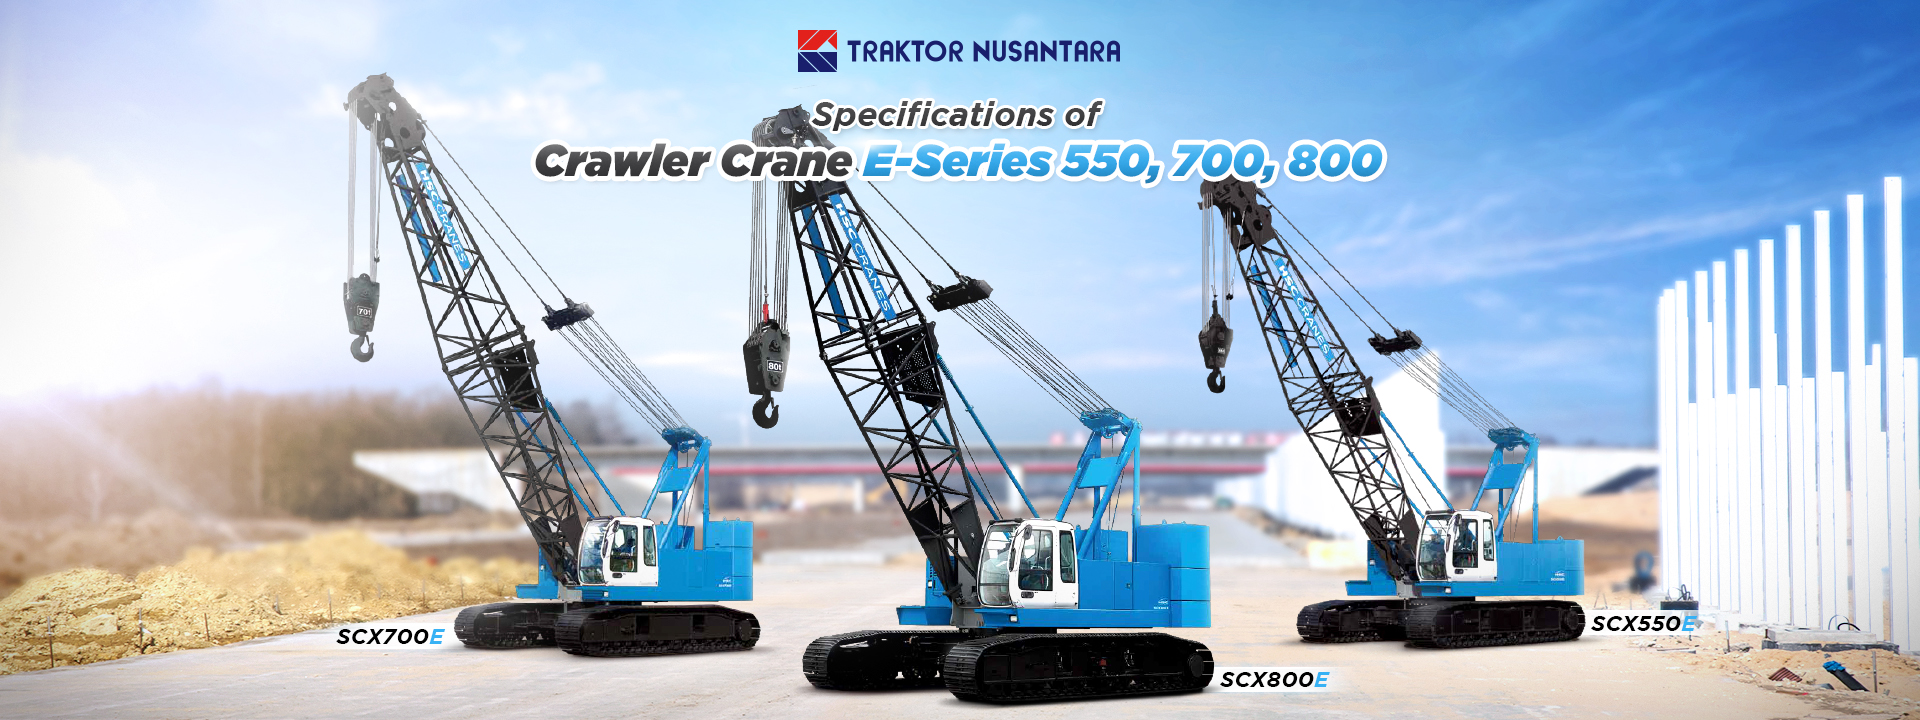 Specifications of crawler crane scx550e scx700e and scx800e